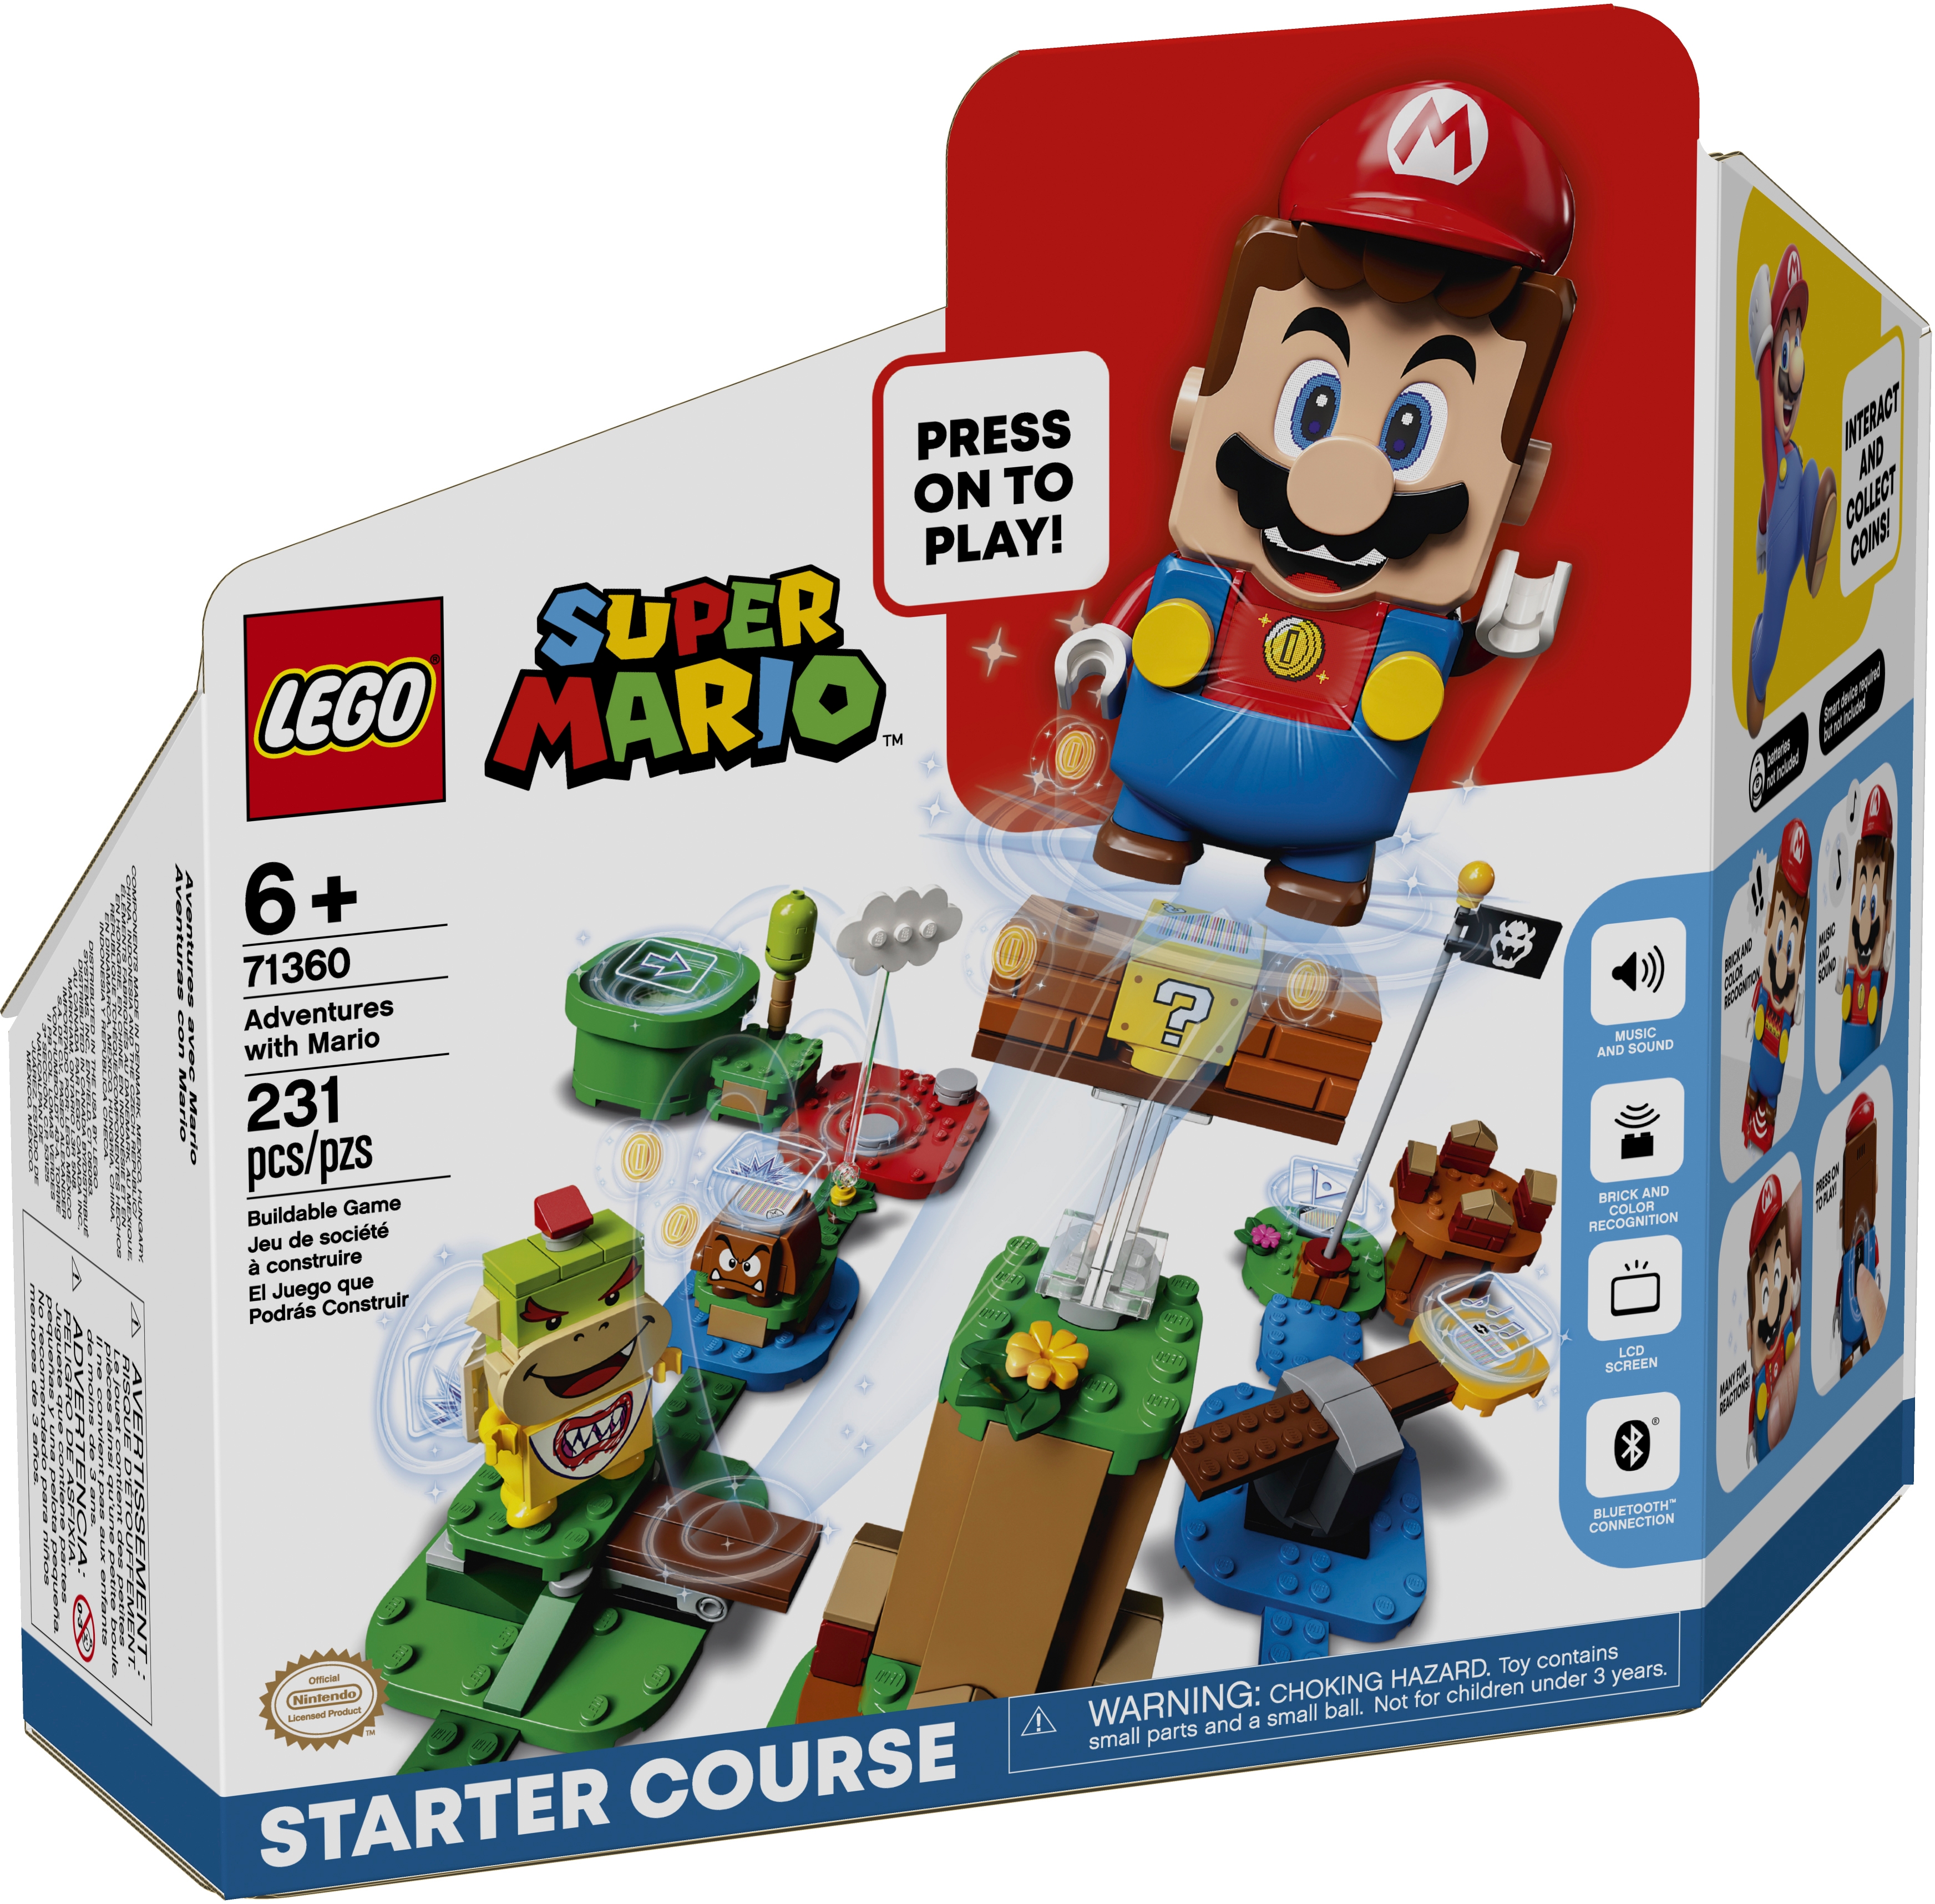 Приключения вместе с Марио. Стартовый набор 71360 | LEGO® Super Mario™ |  LEGO.com RU